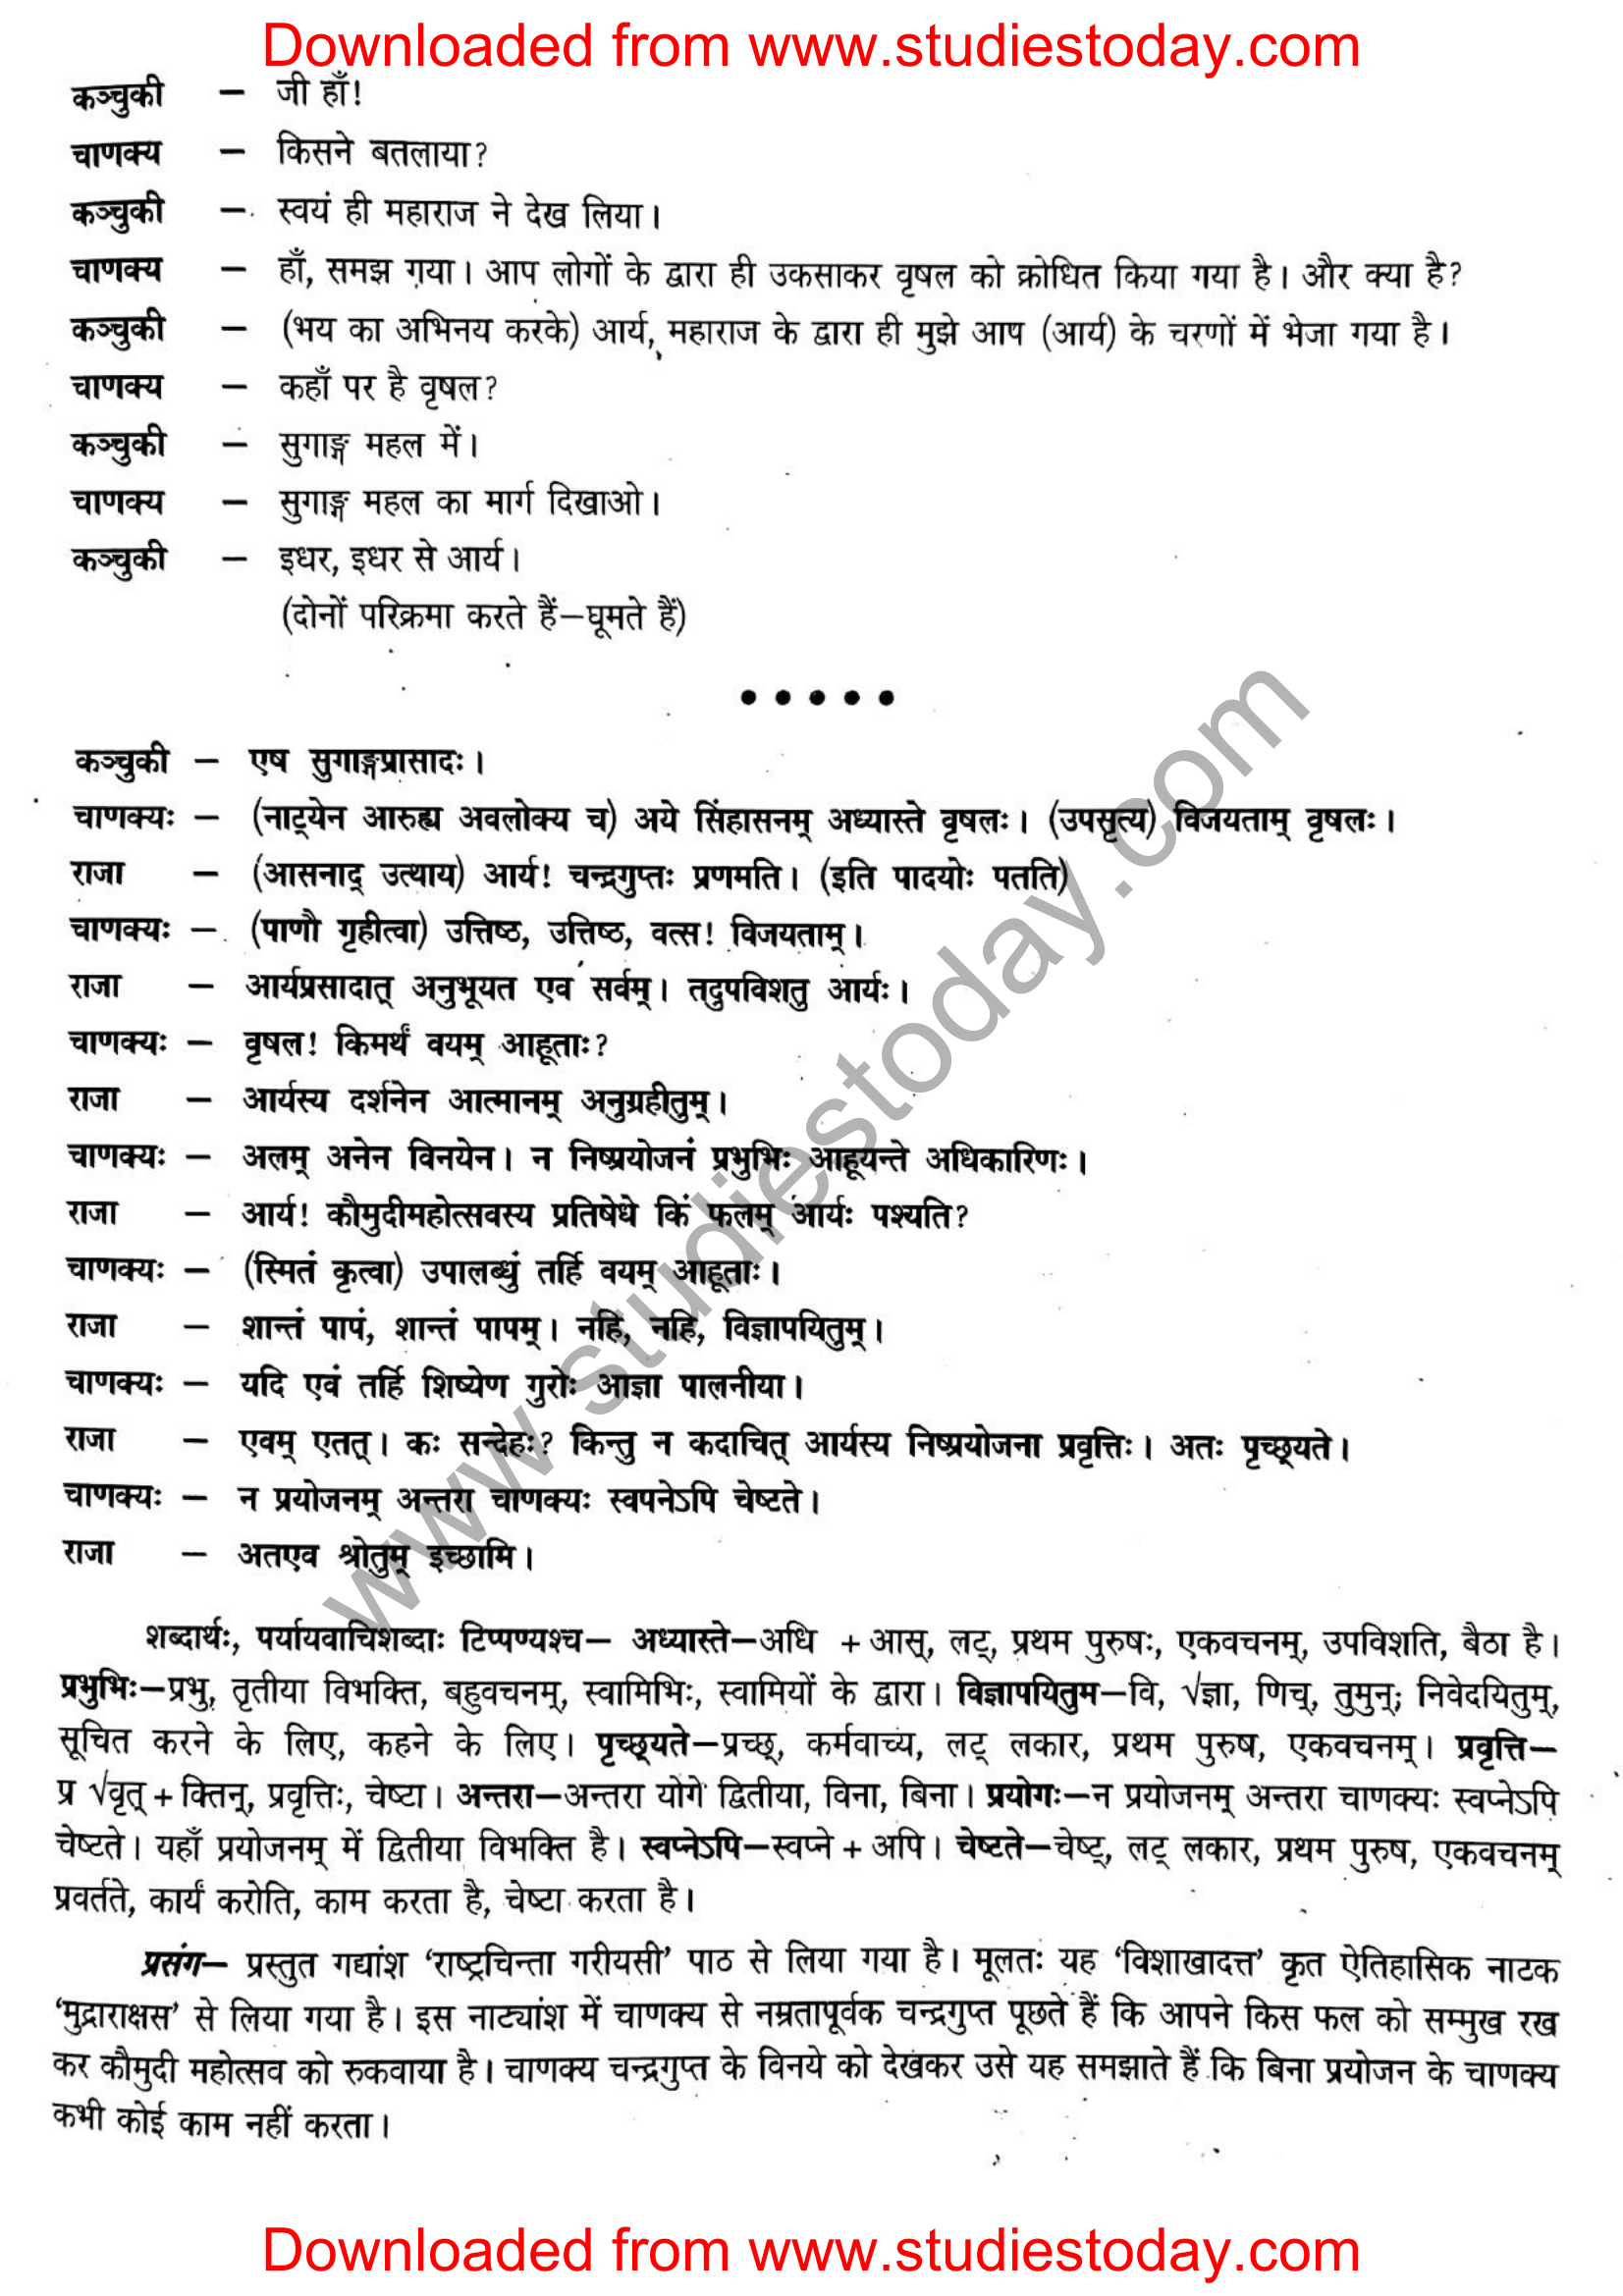 ncert-solutions-class-12-sanskrit-ritikia-chapter-3-05